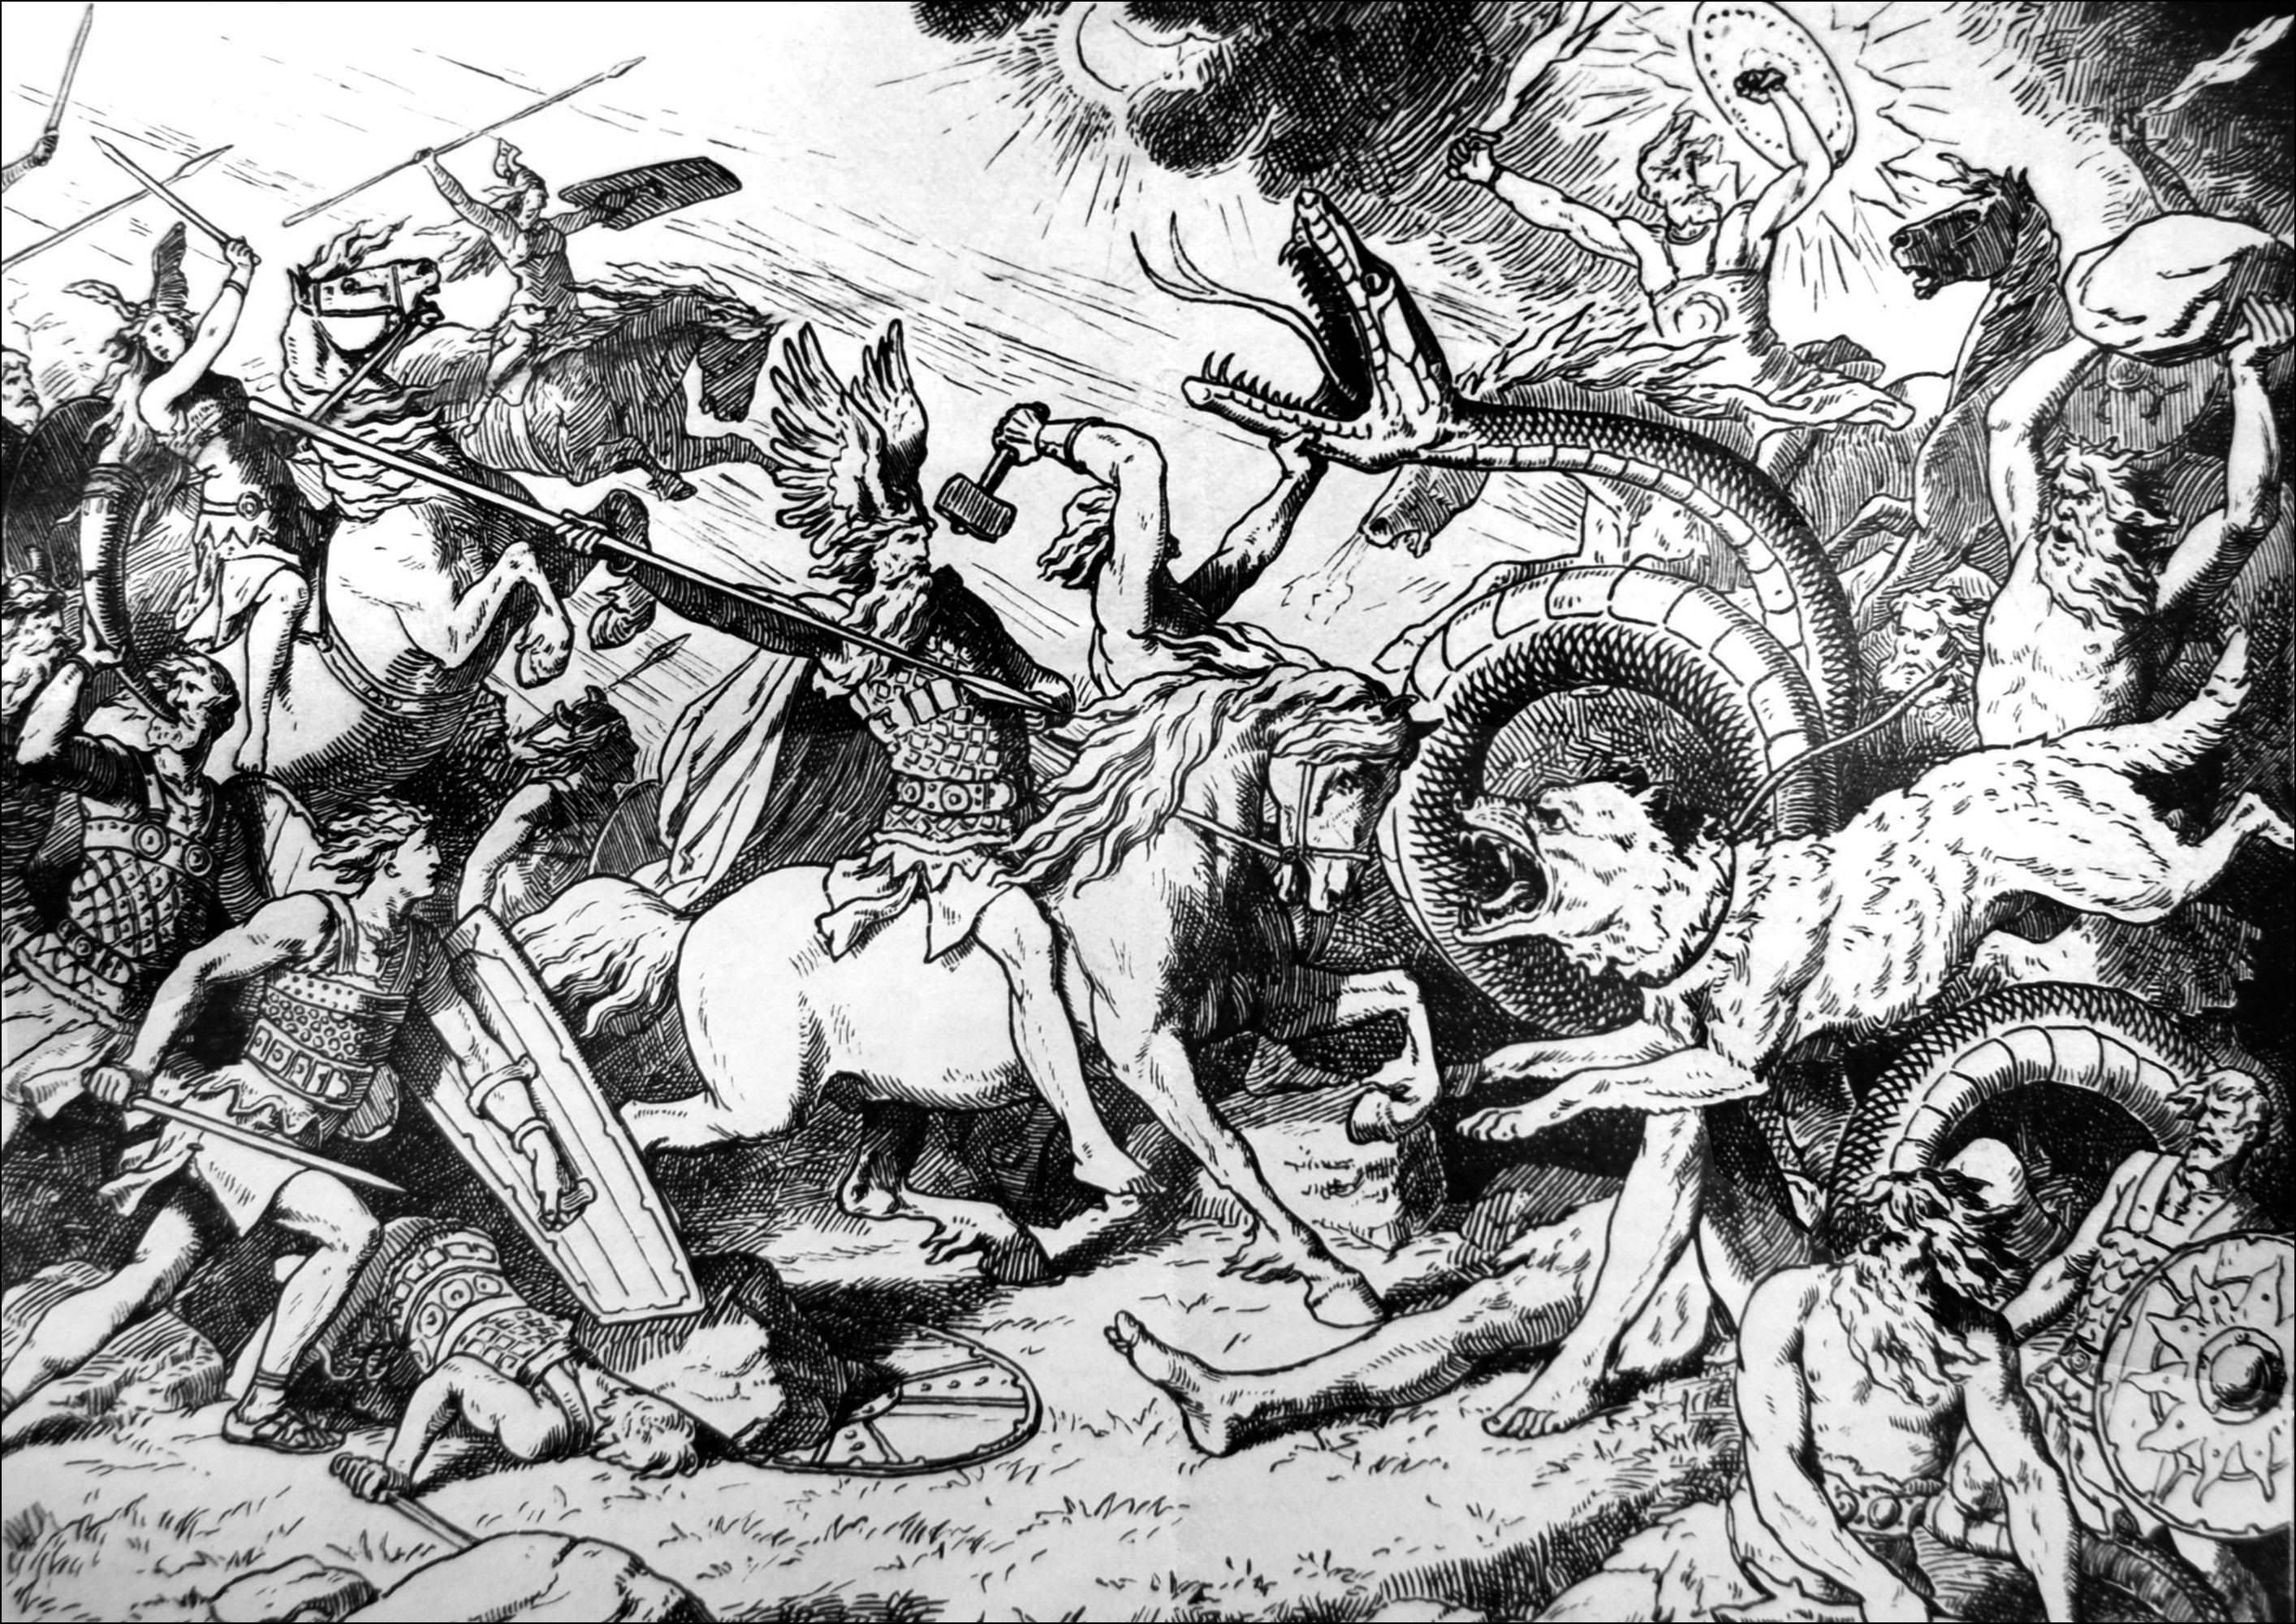 Ragnarok, giorno del giudizio vichingo - illustrazione di Johannes Gehrts (1855, 1921). Il Ragnarök è l'apocalisse della mitologia norrena. Essa